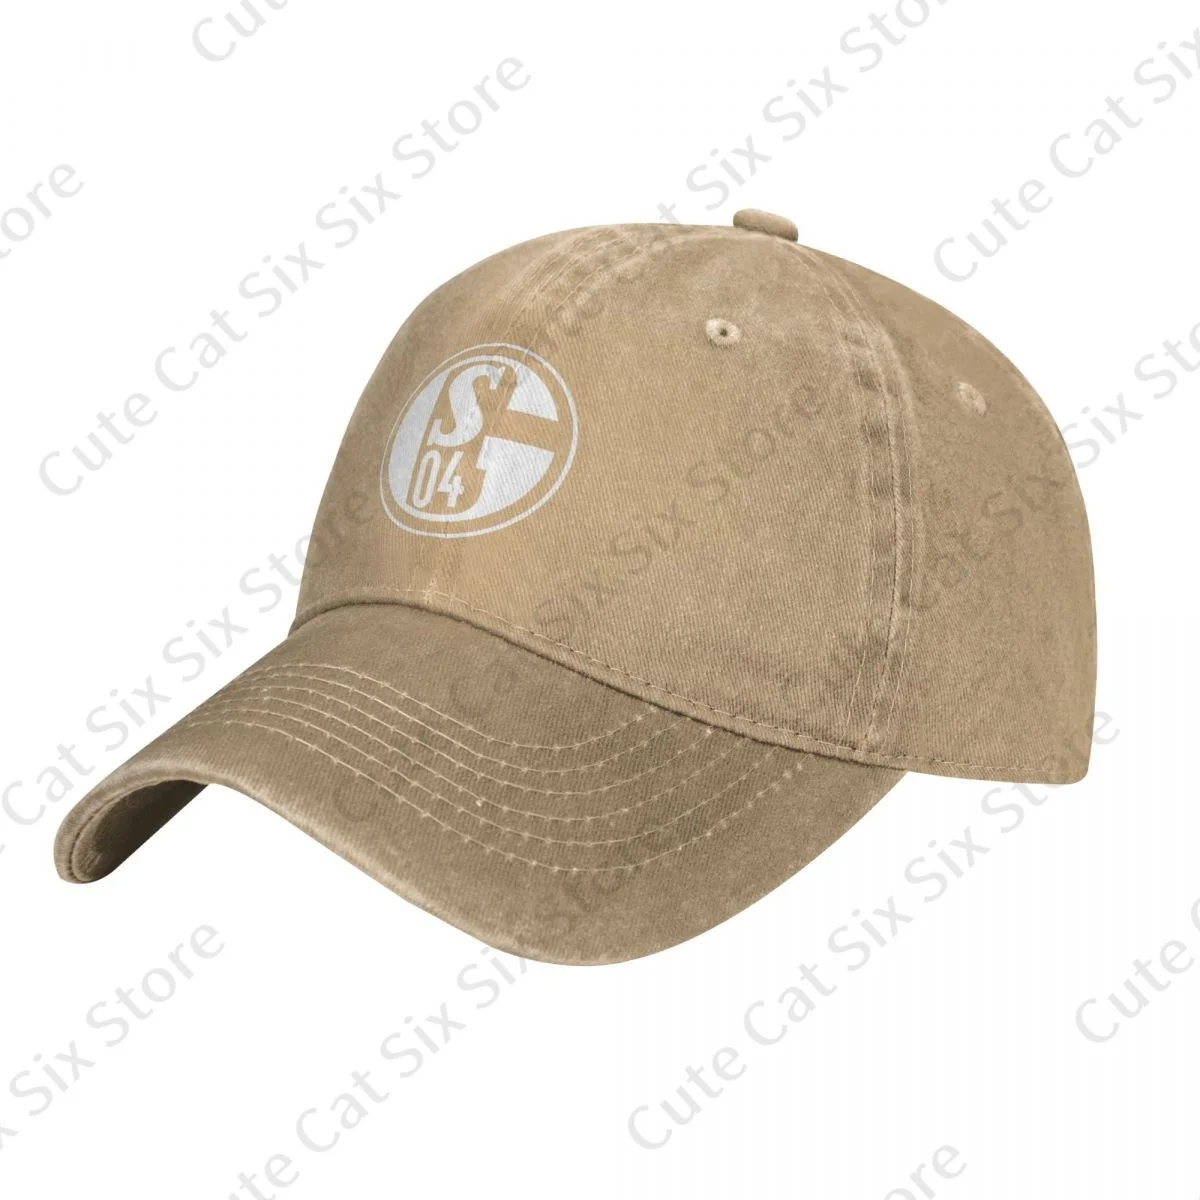 

Men and Woman's Vintage FC Schalke 04 Baseball Cowboy Hat Caps Adjustable Casual Cotton Sun Hats Unisex Visor Hats